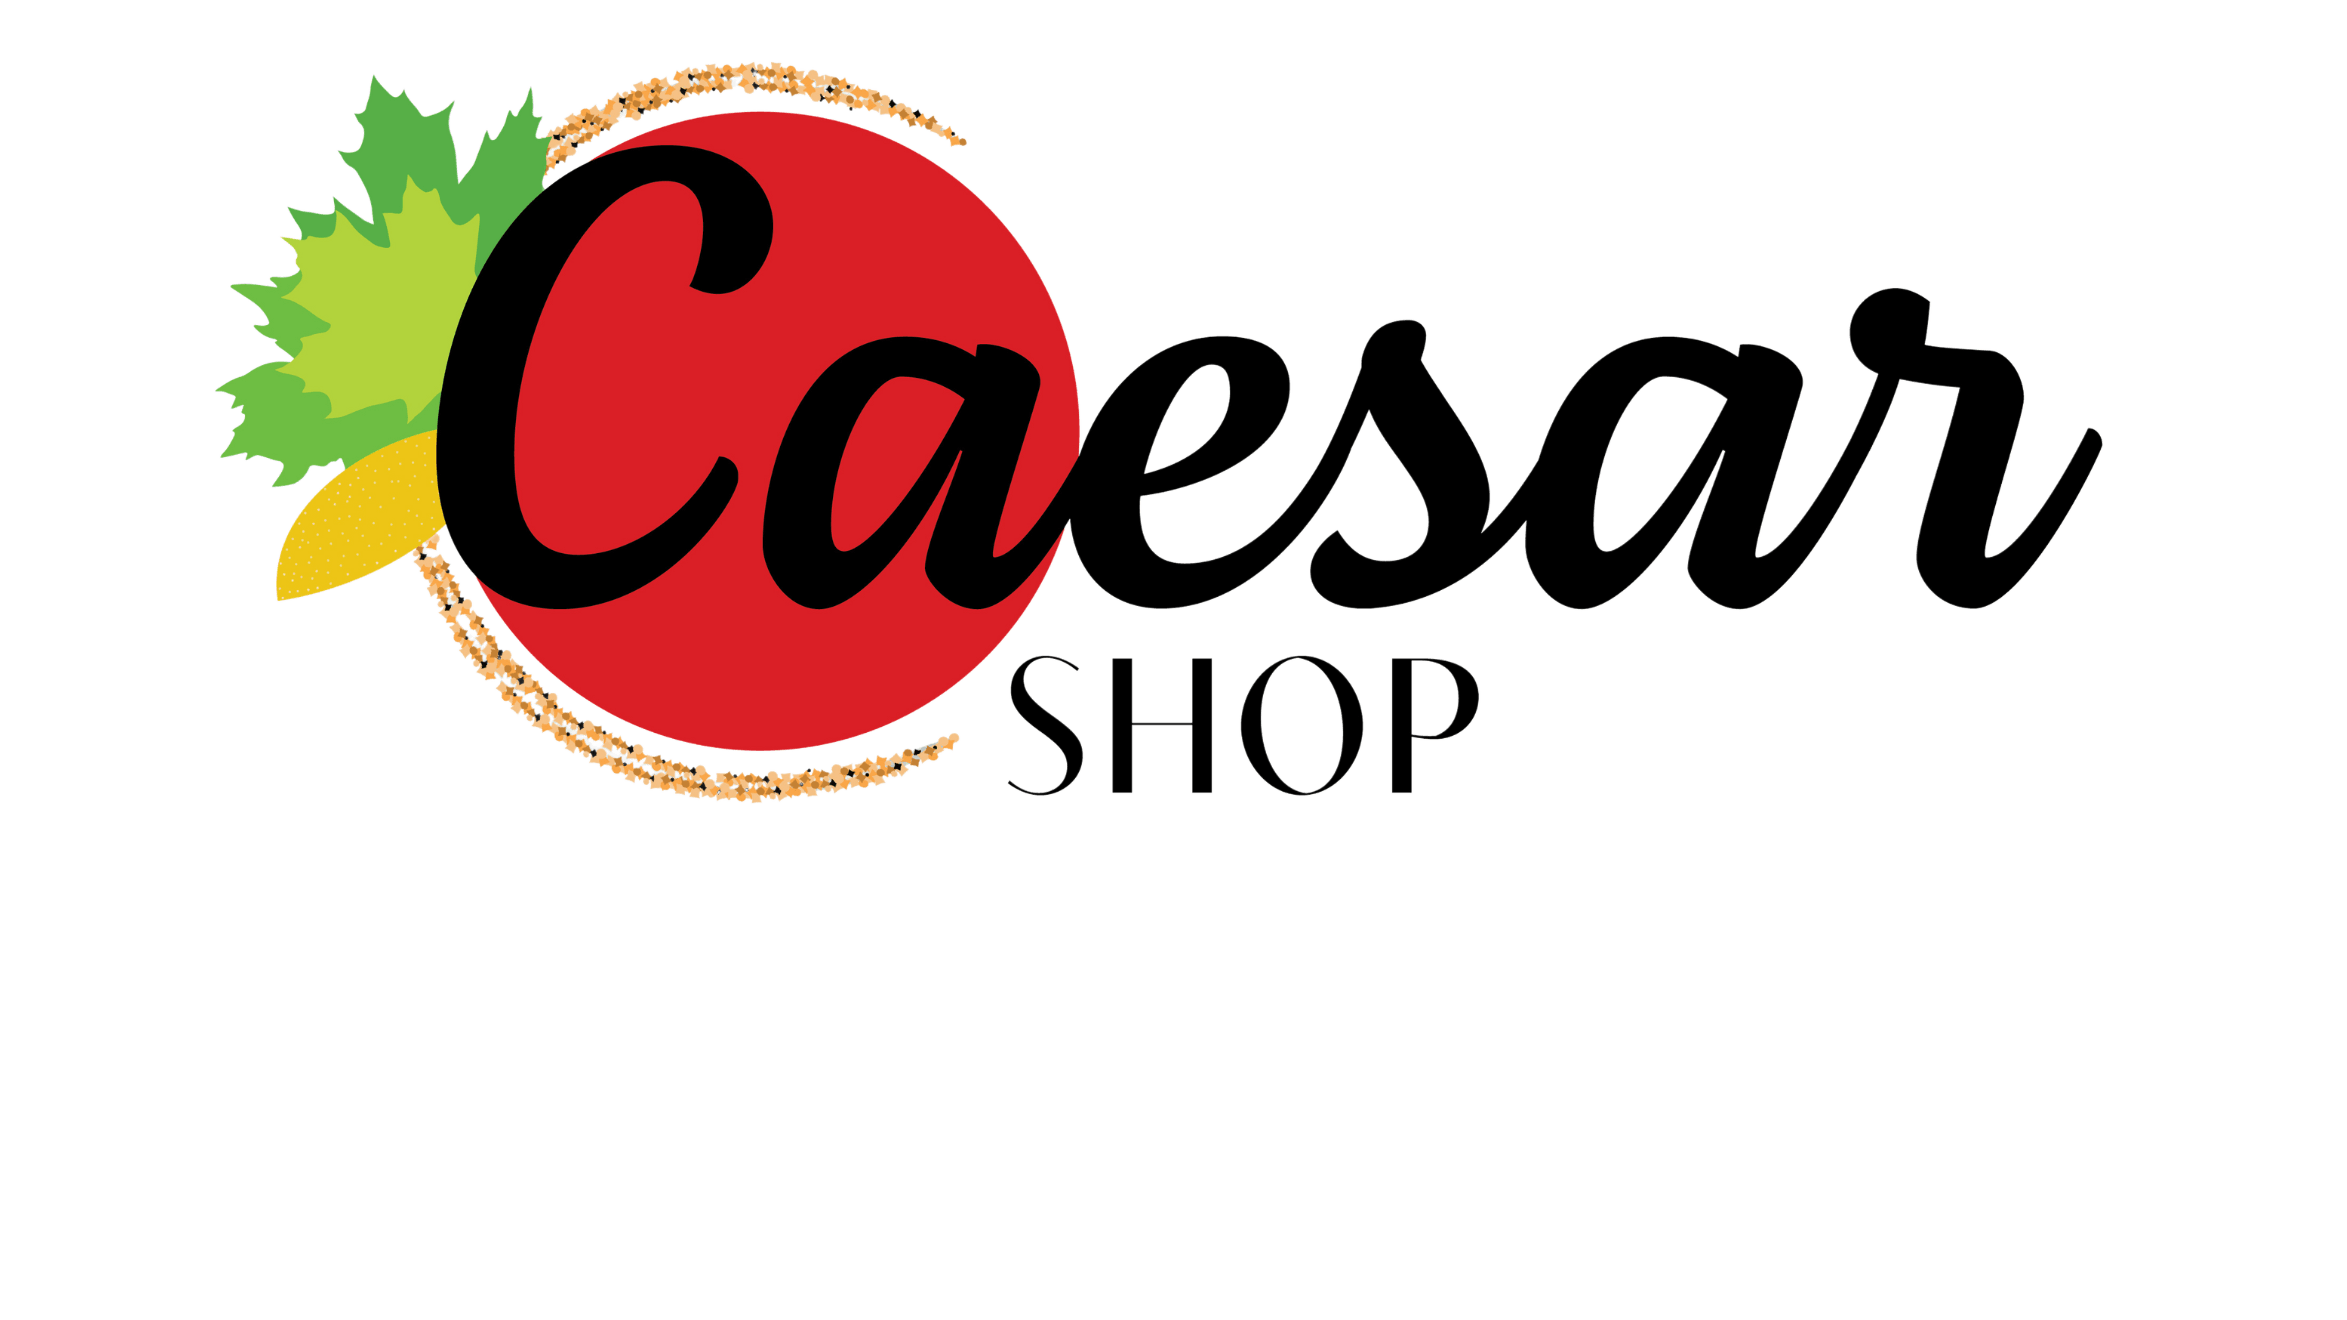 Caesar Shop logo